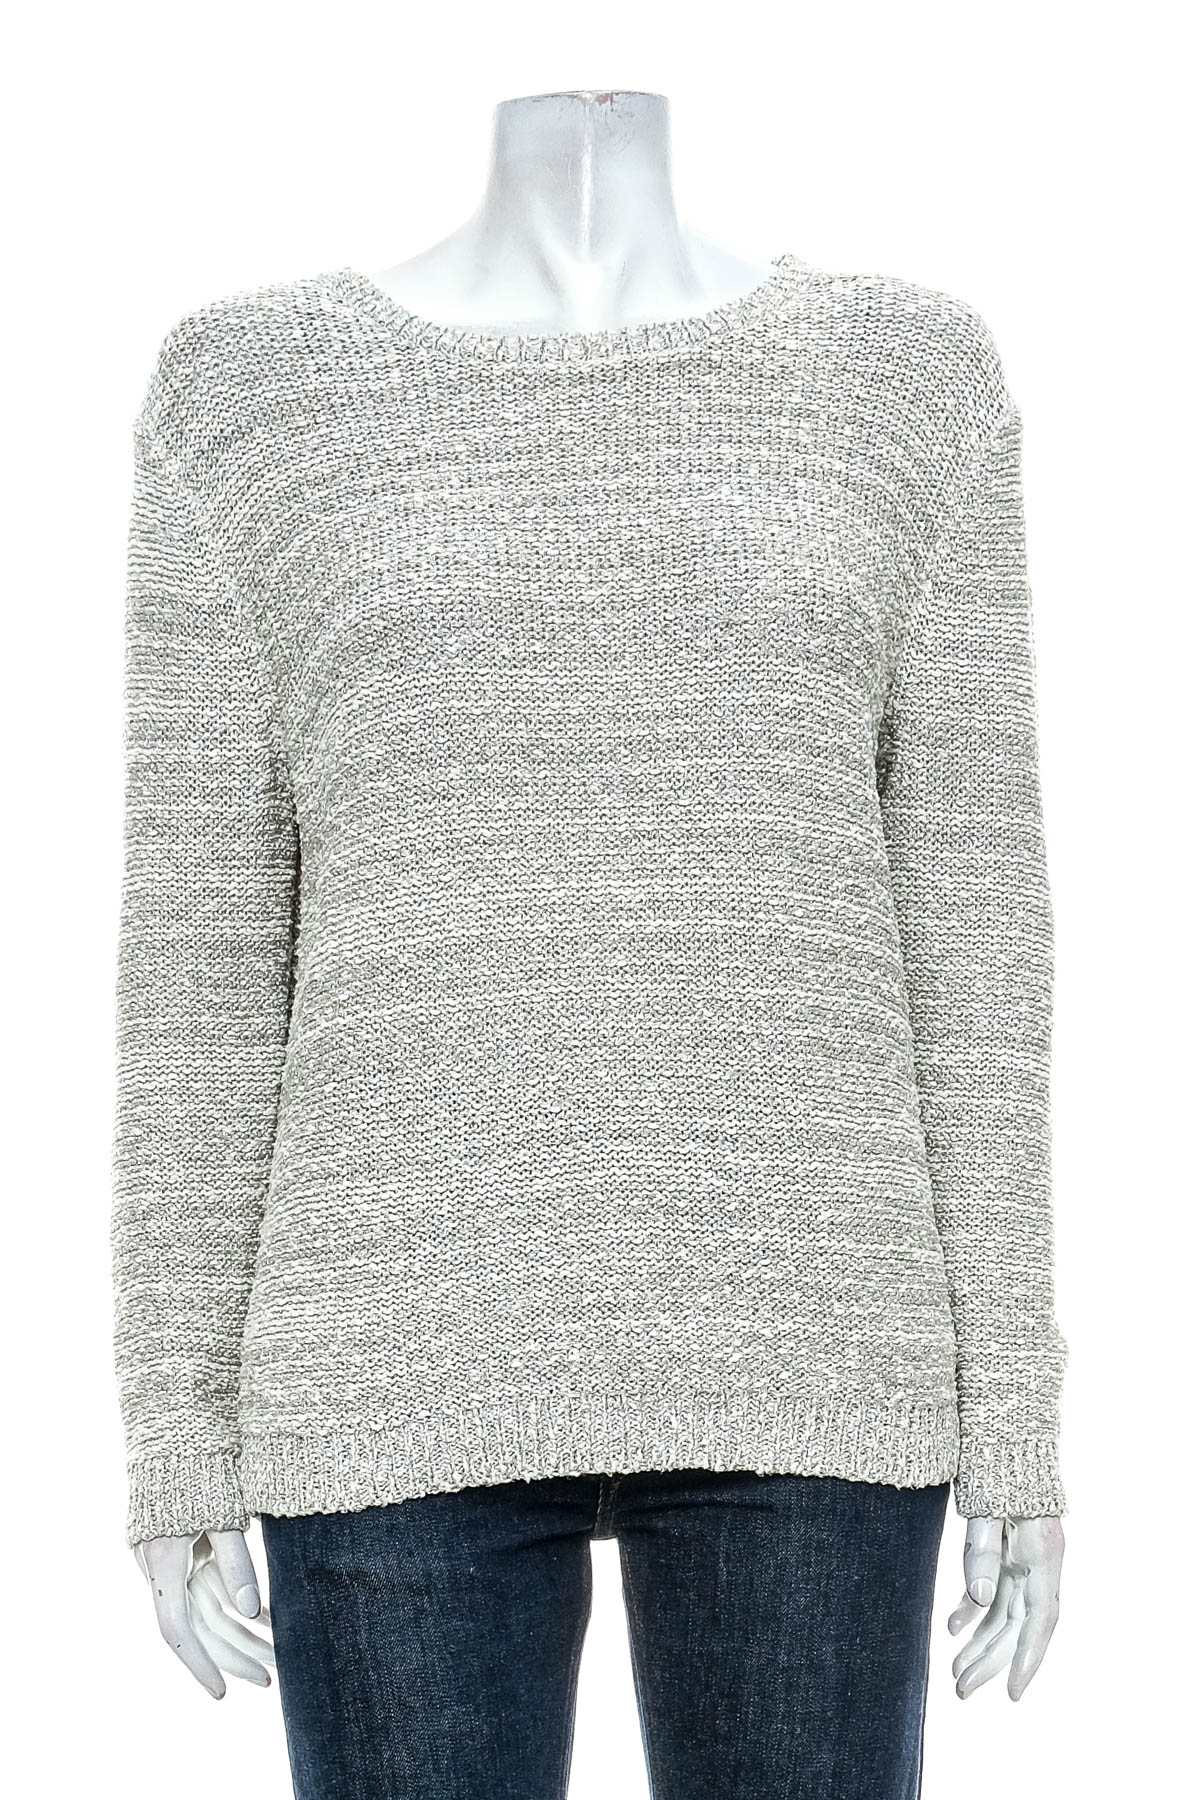 Women's sweater - M&S Woman - 0